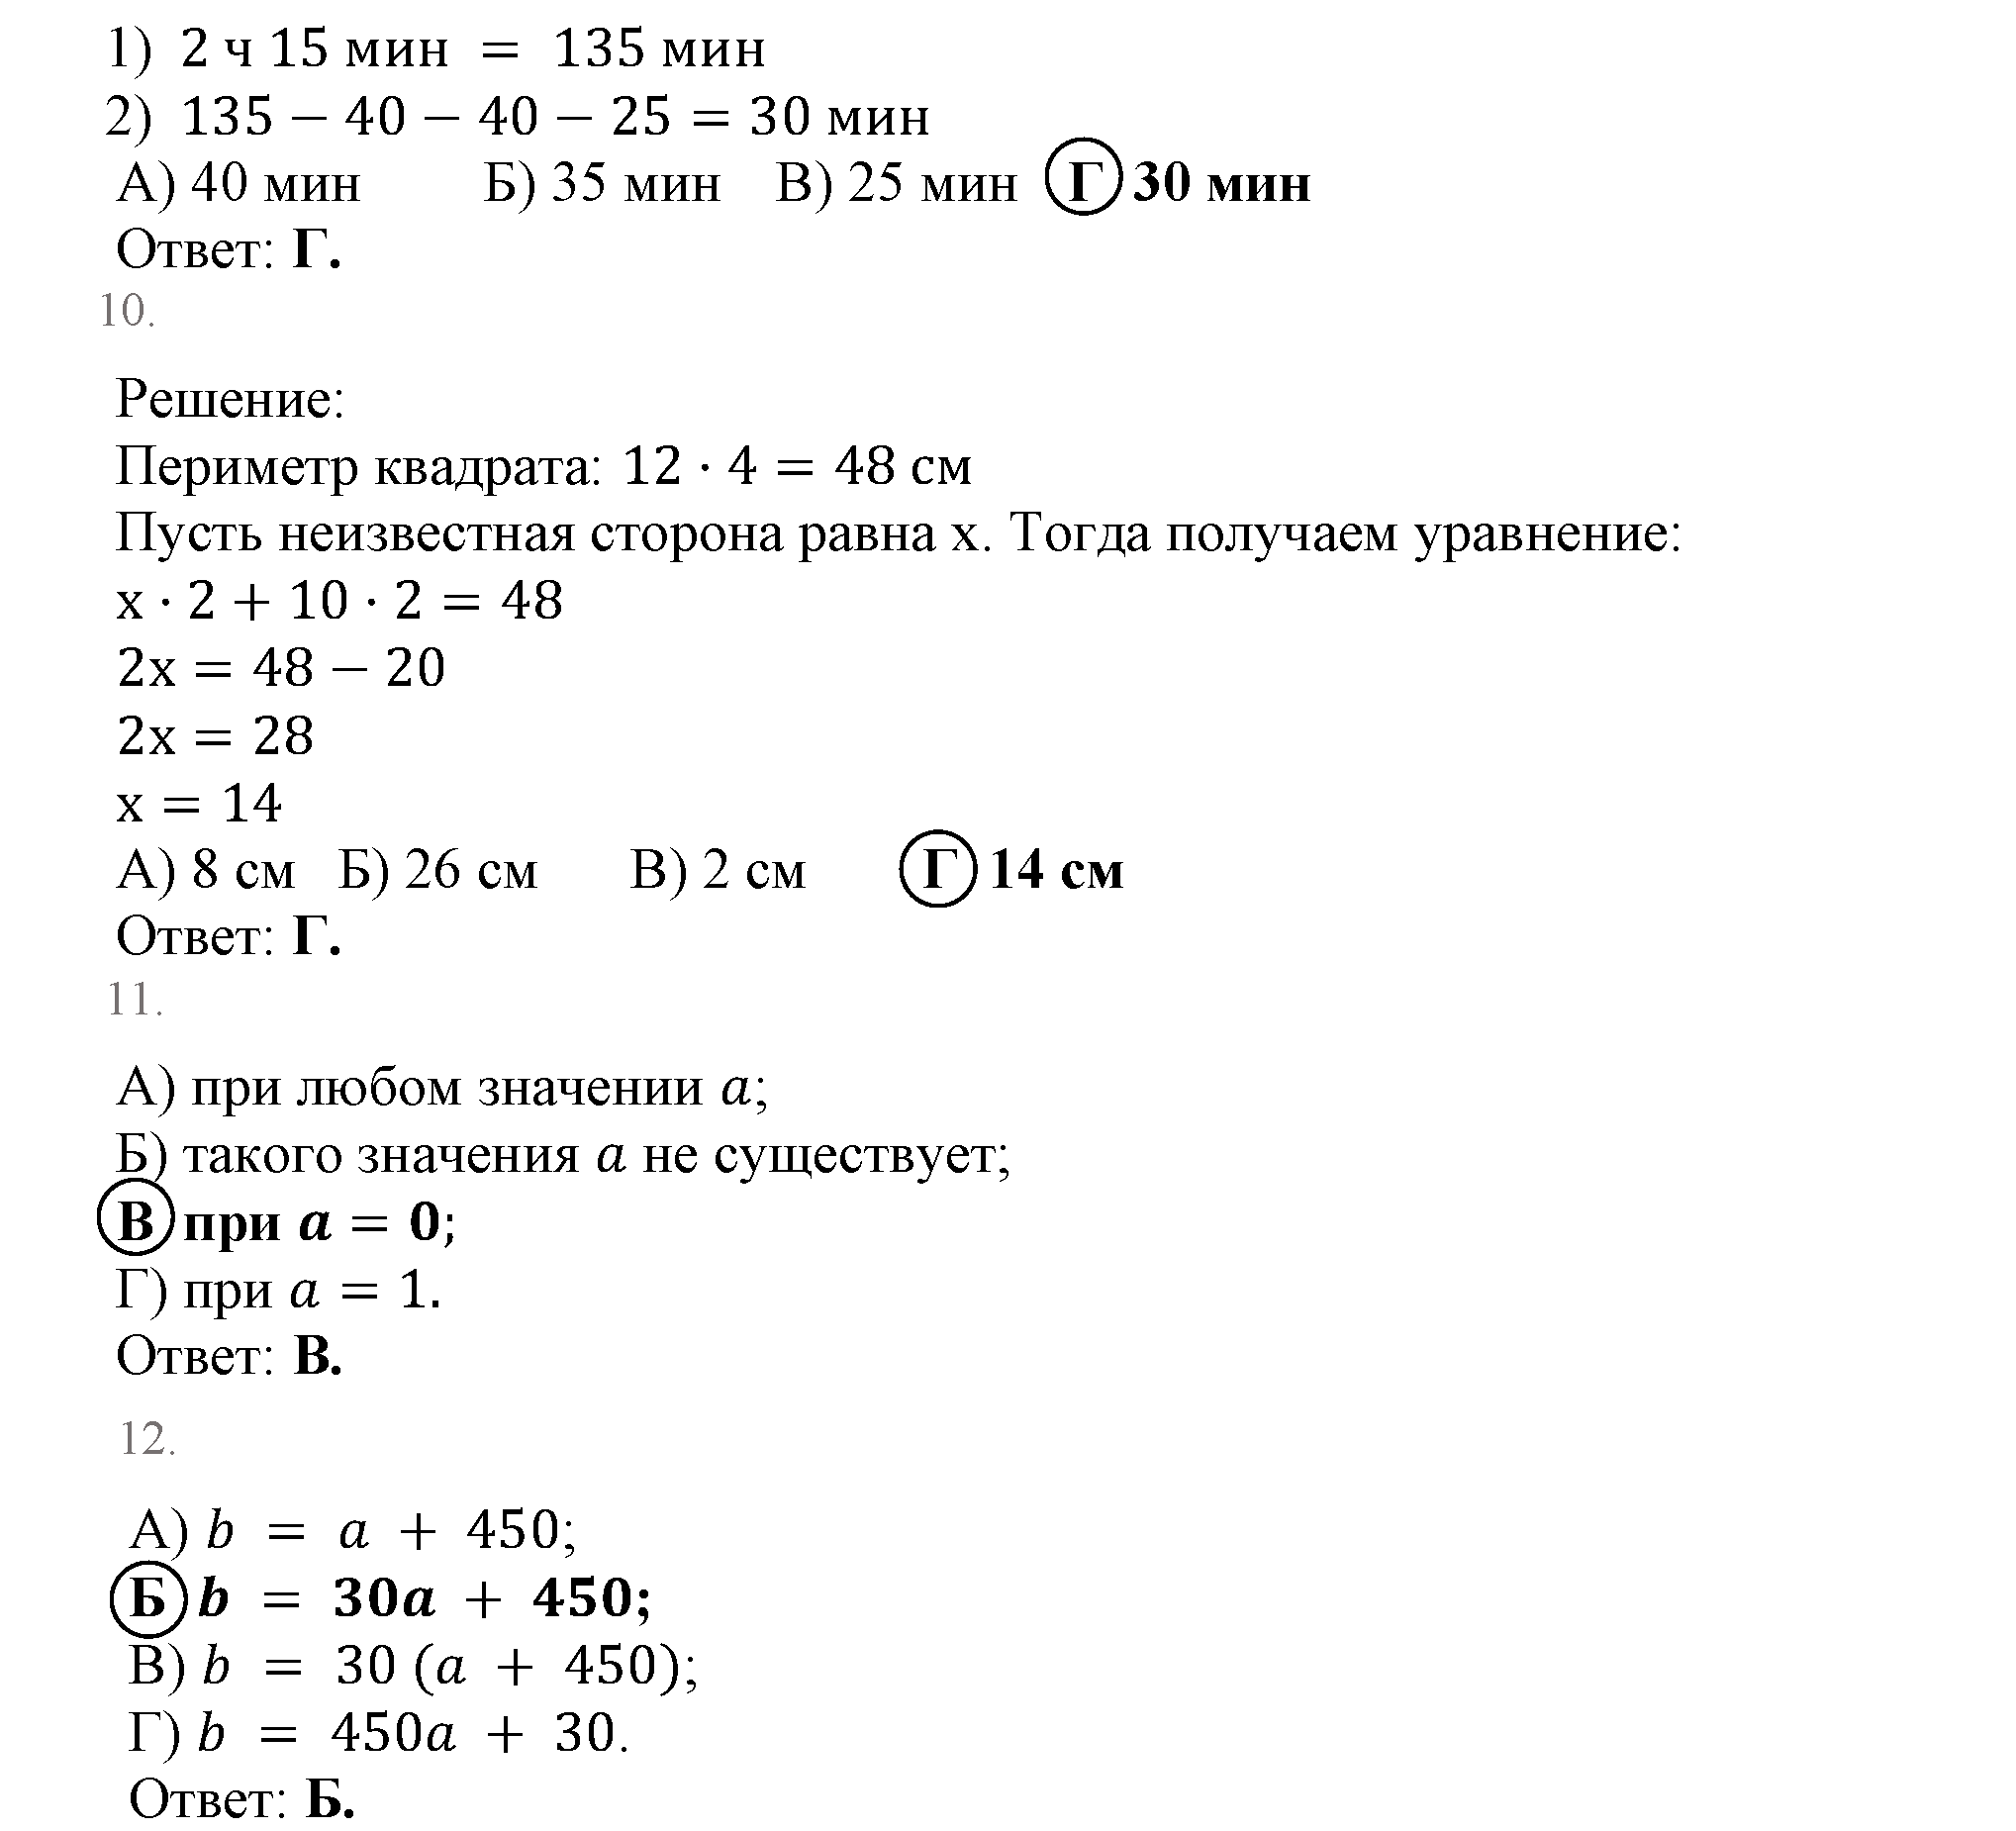 Задание №2, Проверьте себя математика 5 класс Мерзляк 2014